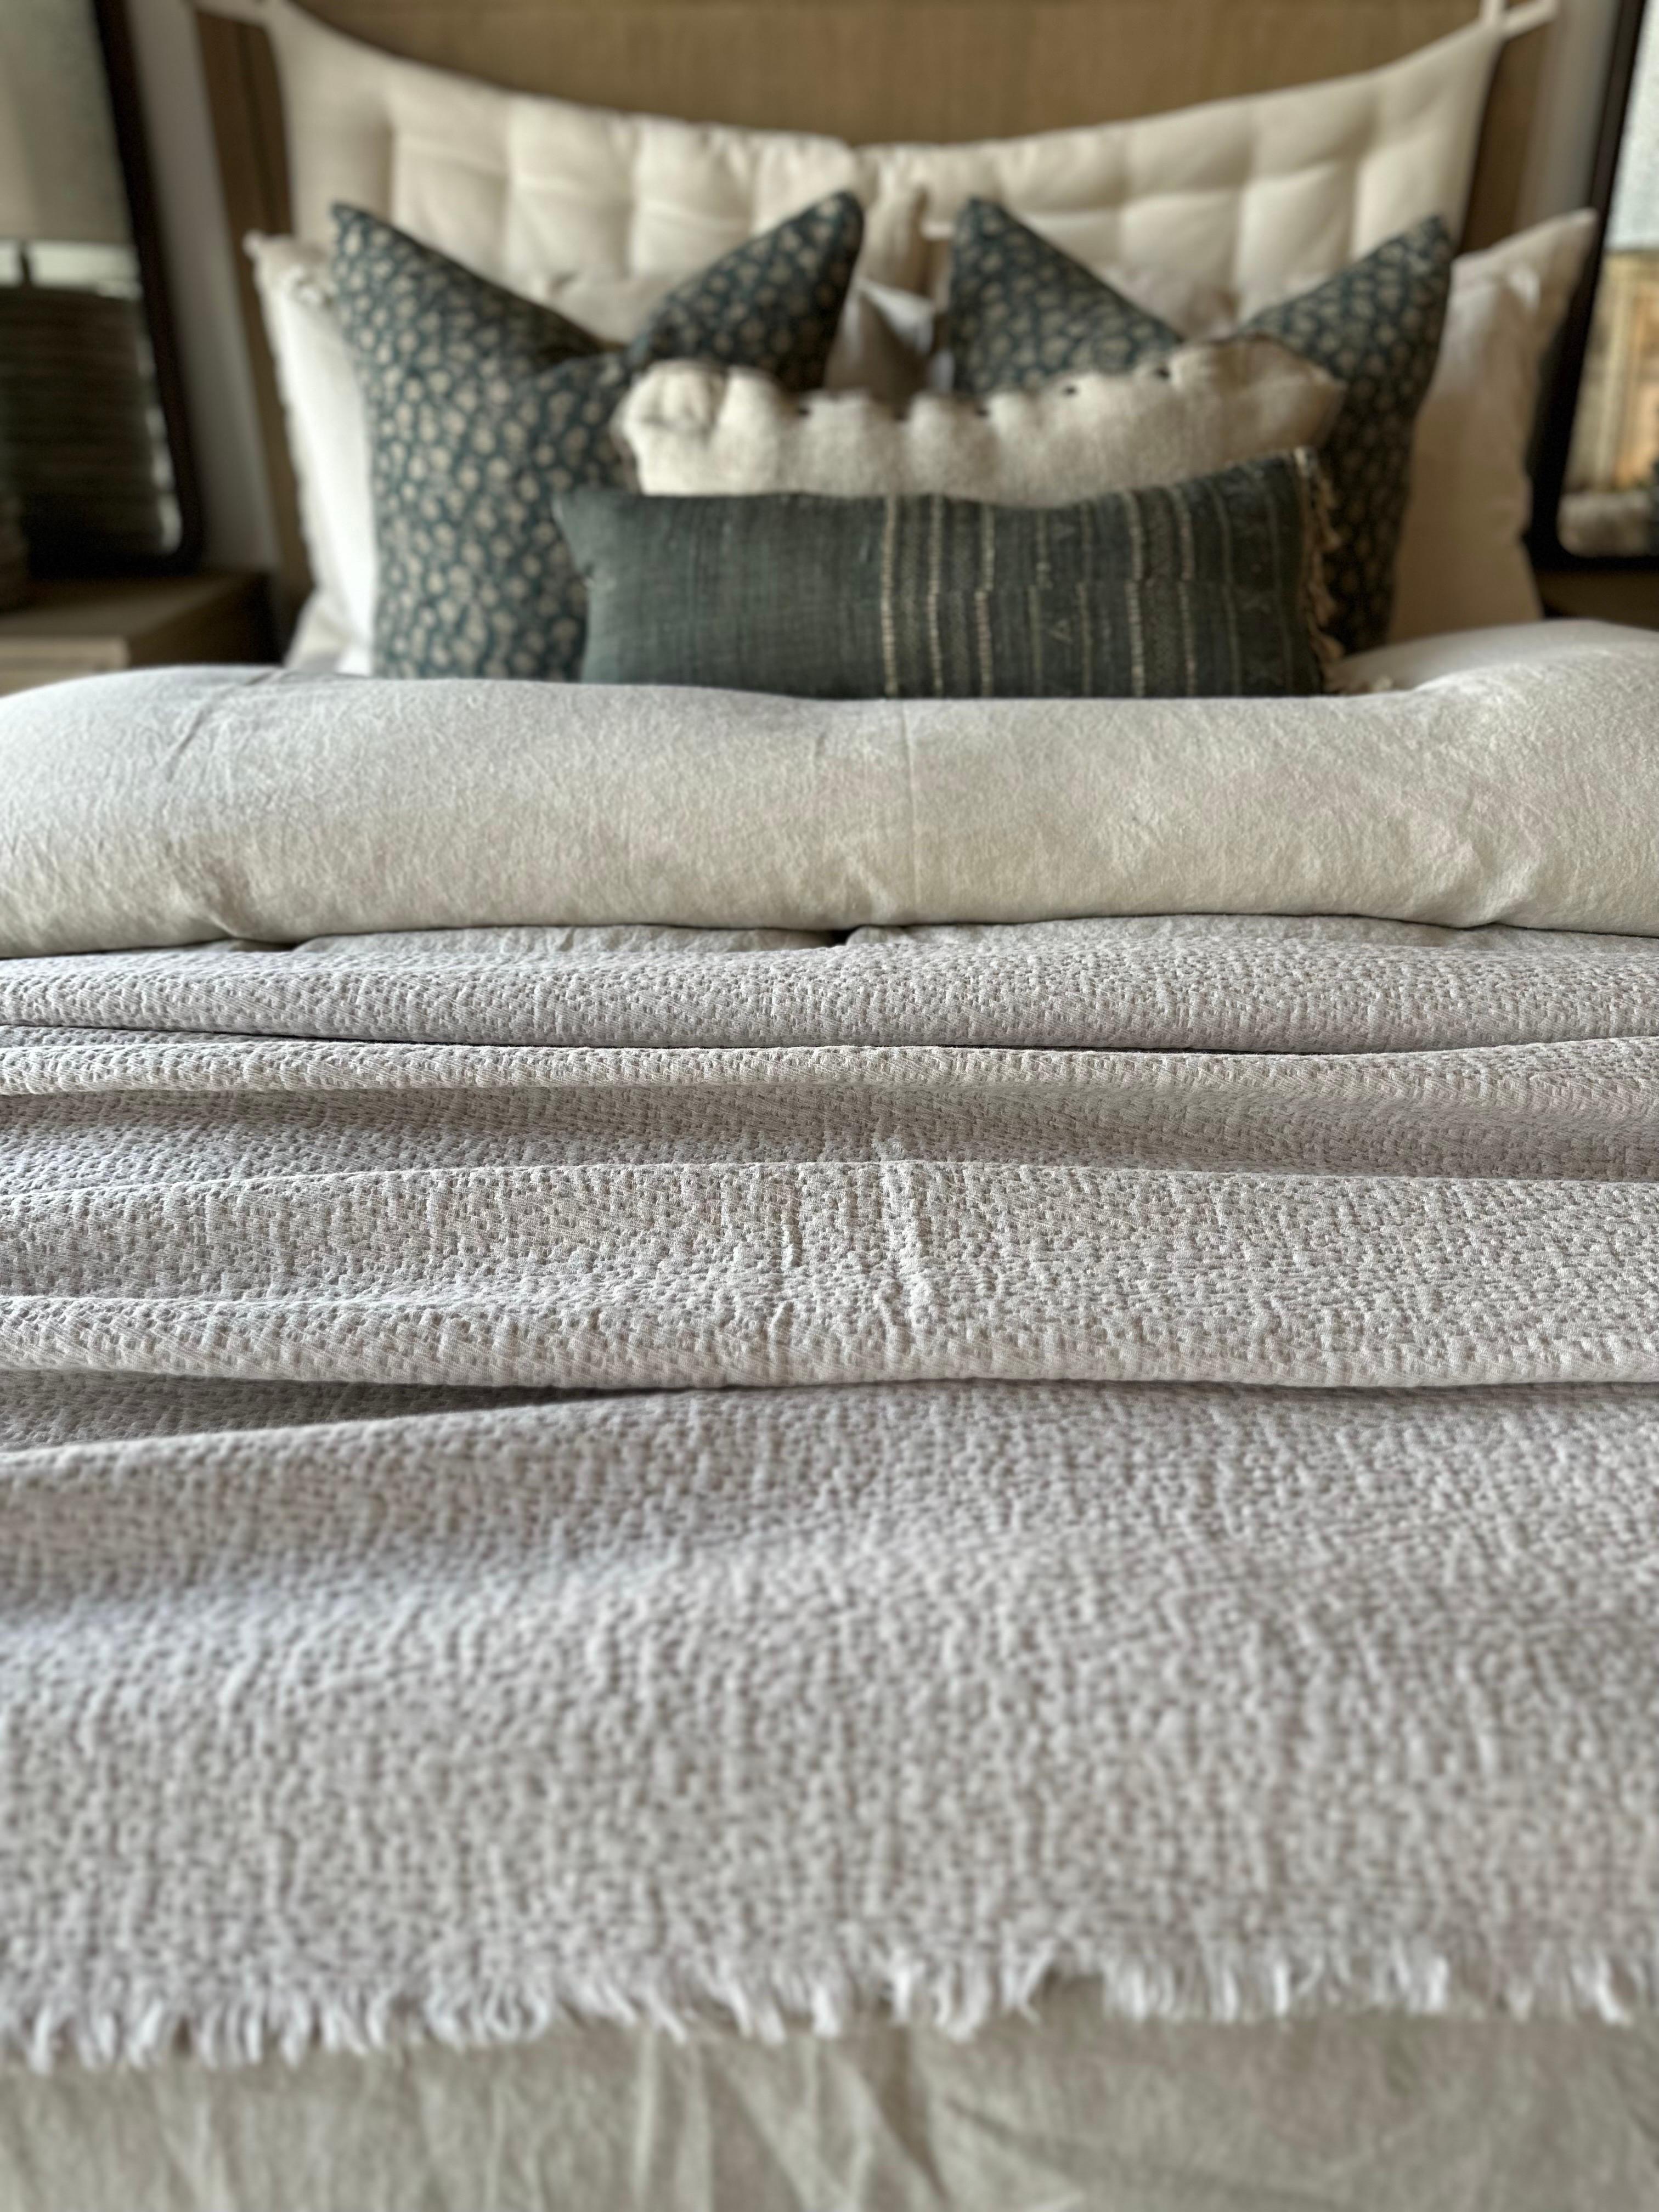 Eine Decke aus weicher Plüsch-Baumwolle mit Waffelstruktur. Hervorragend geeignet als Akzent am Ende des Bettes oder als Bettdecke.
Farbe: Beige-rose-104-94 (Nude-Beige-Ton mit dezentem Rouge-Anteil)
Größe : 94x102
Große Größe kann ein Queen-Size-